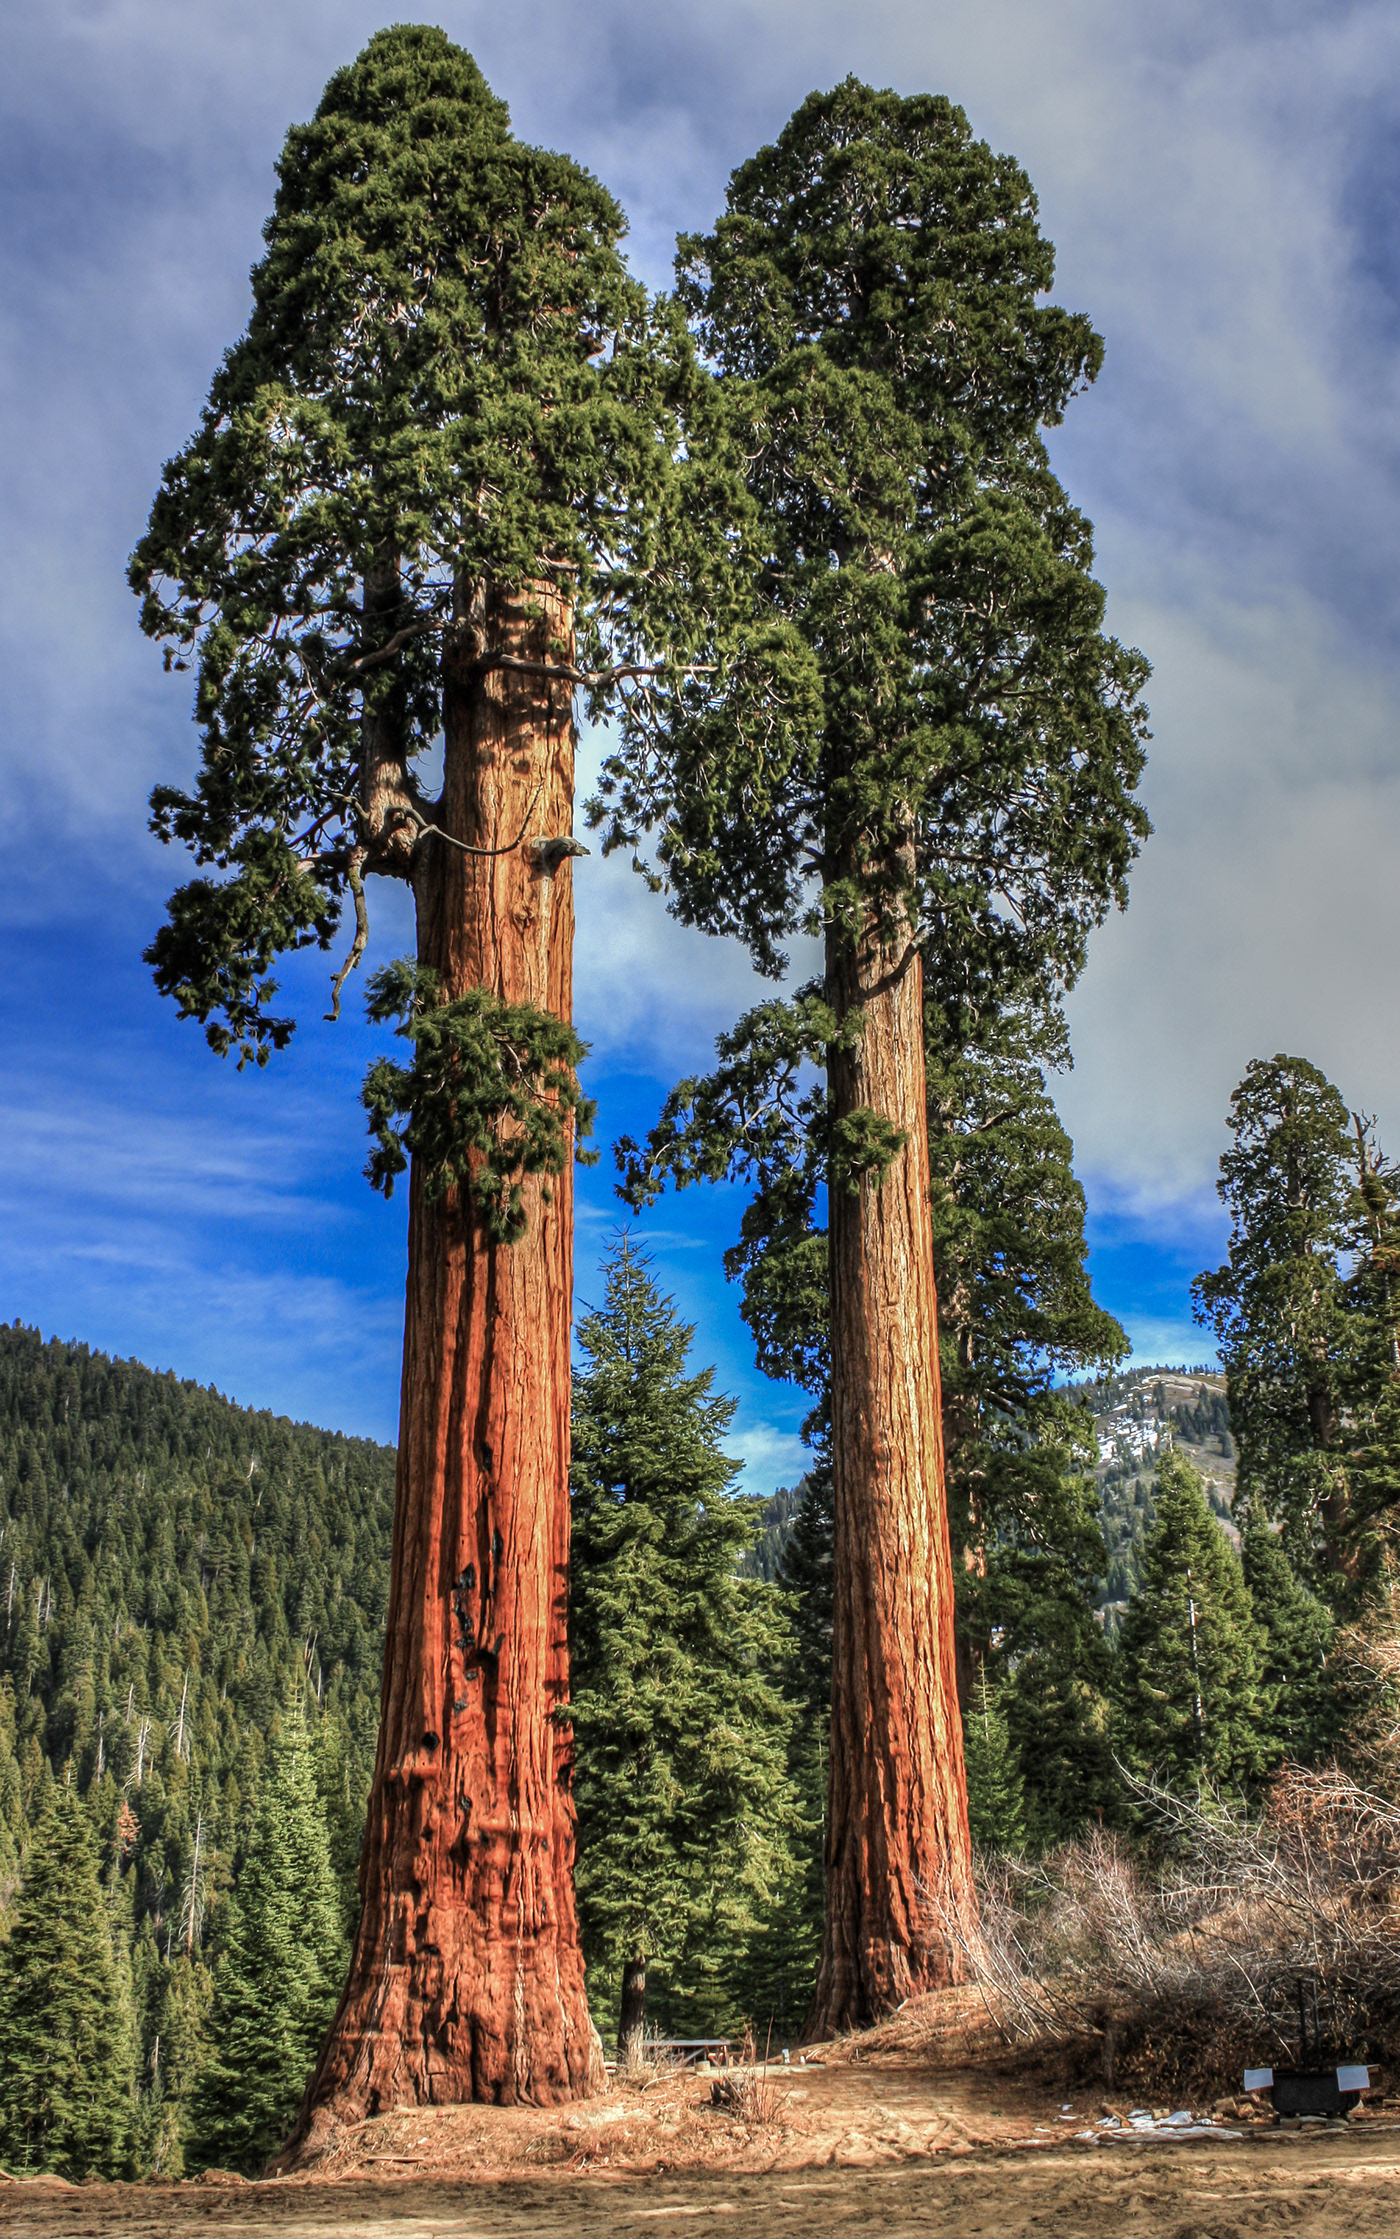 Самое самое в мире дерево. Секвойядендрон гигантский Мамонтово дерево. Секвойя вечнозелёная Sequoia sempervirens. Секвойя дерево гигант. Деревья Секвойя в Северной Америке.